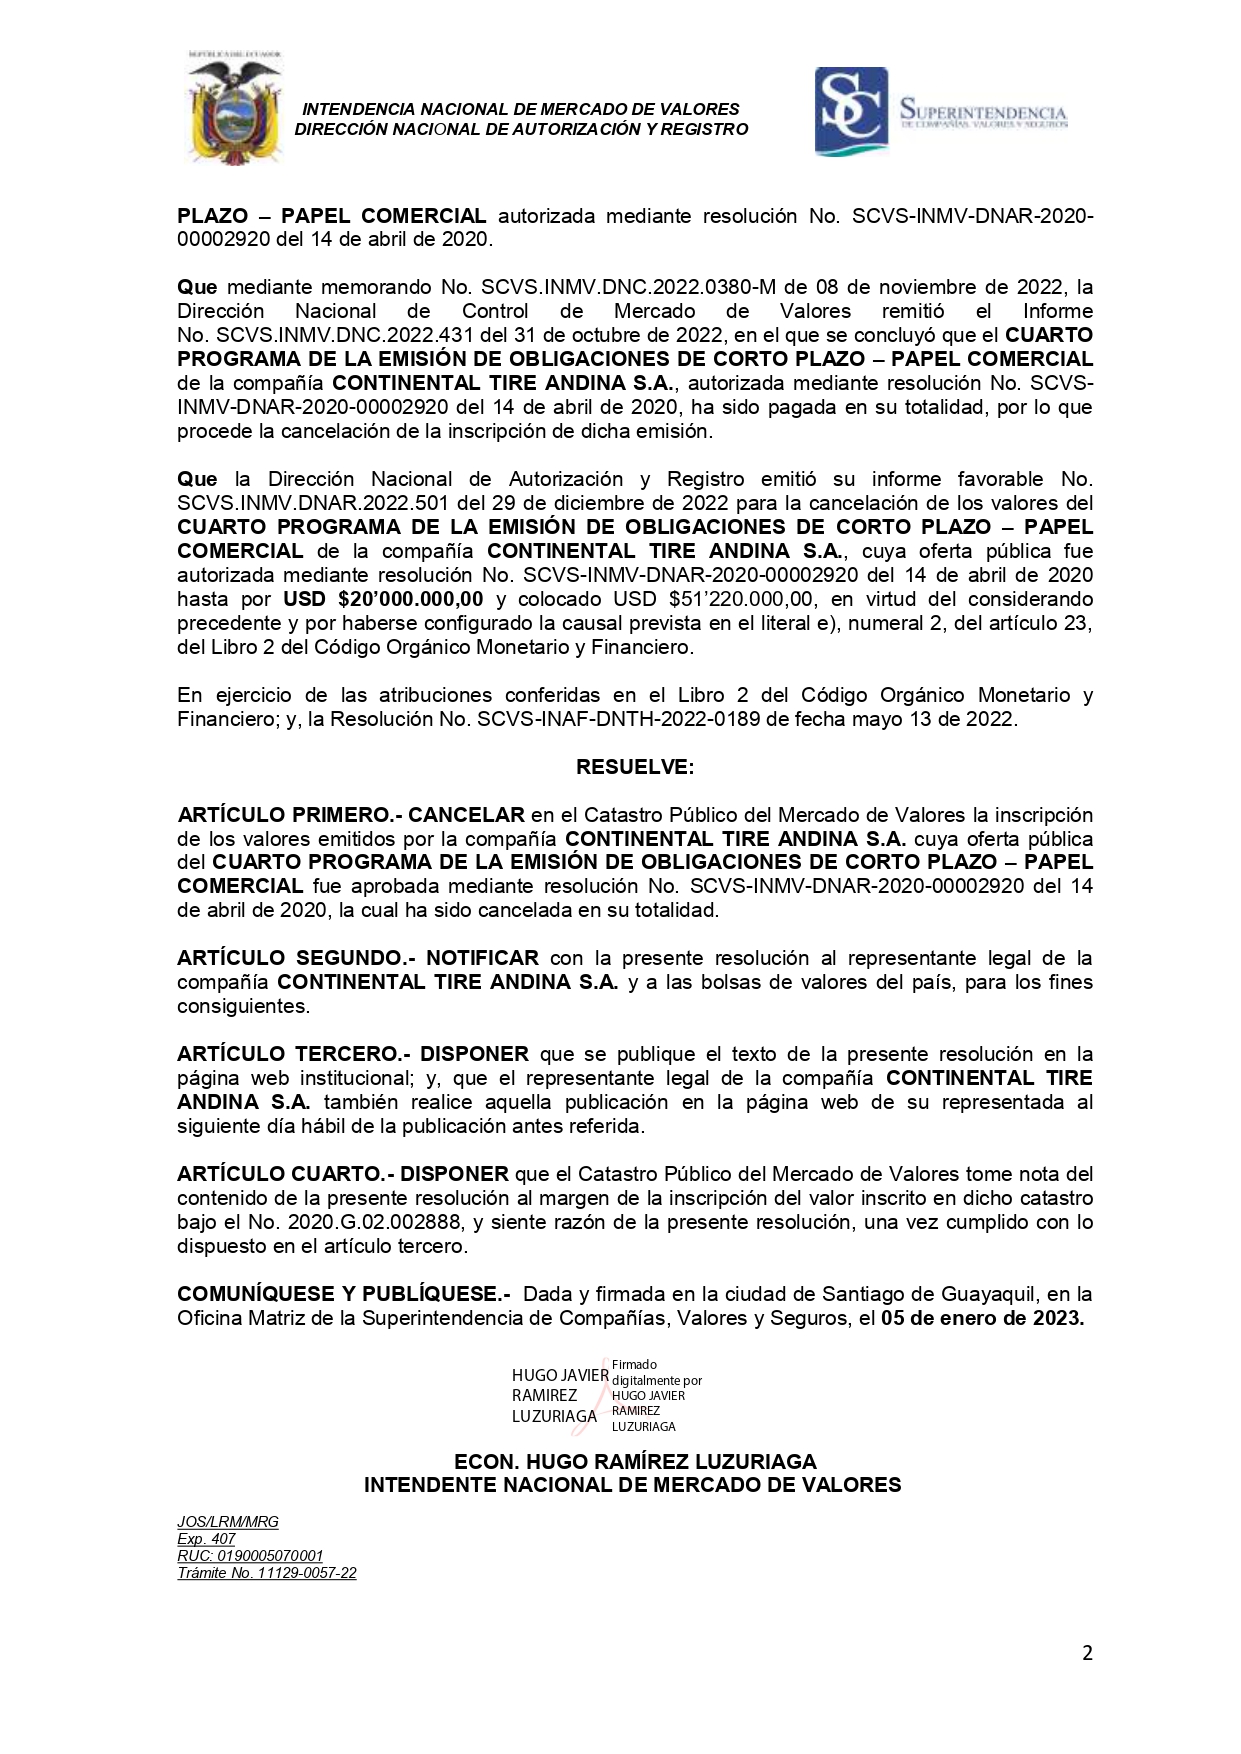 Cancelación del CUARTO PROGRAMA DE EMISIÓN DE OBLIGACIONES DE CORTO PLAZO-PAPEL COMERCIAL de la compañía CONTINENTAL TIRE ANDINA S.A